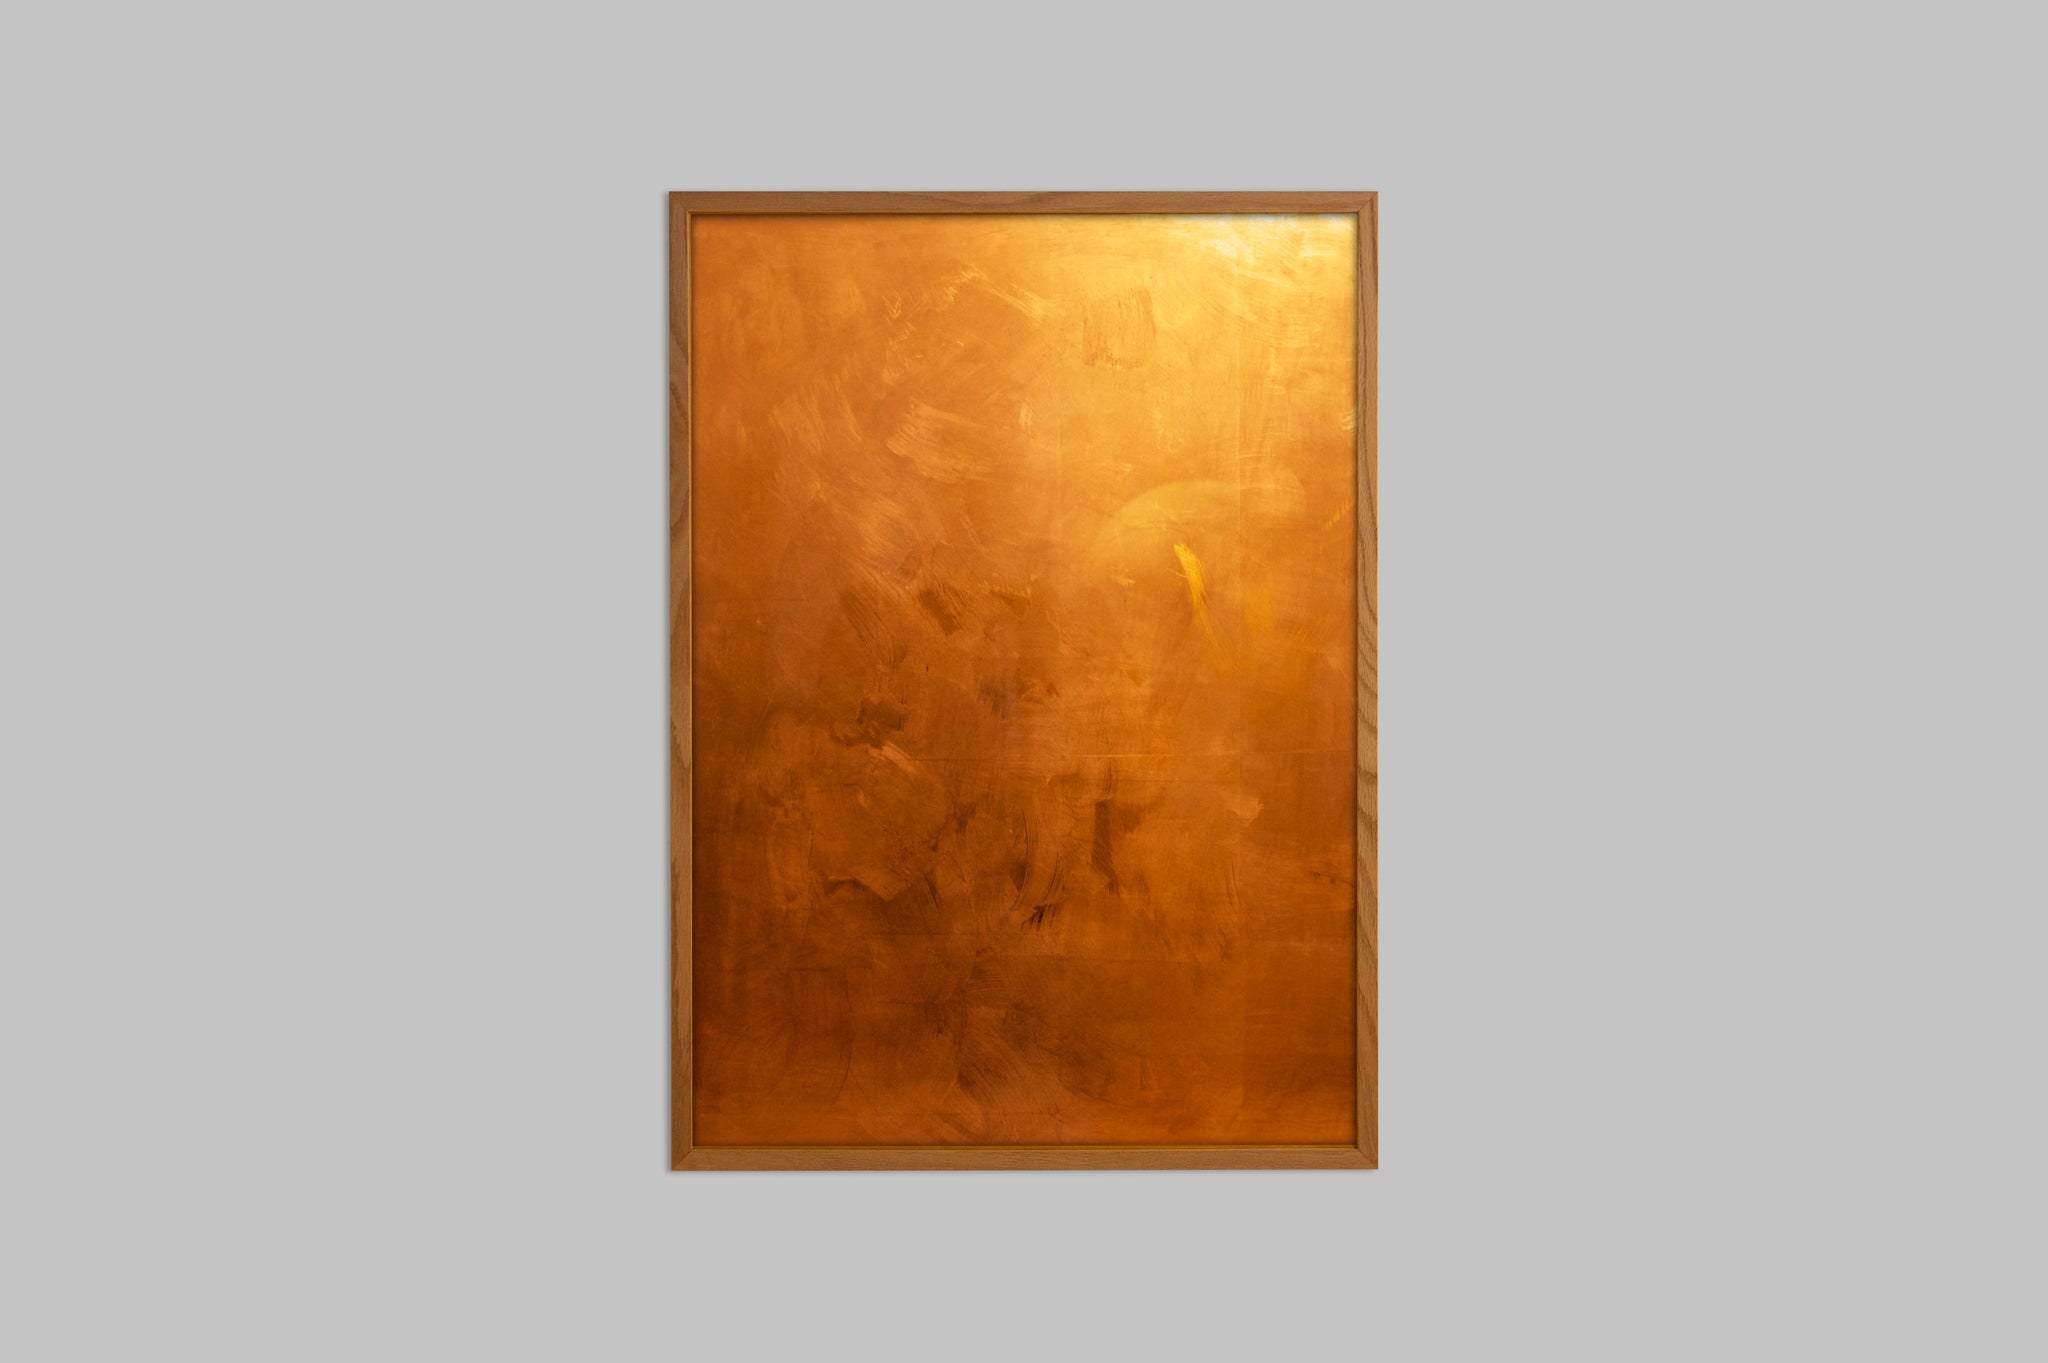 Copper Magnetboard / Whiteboard in an oak frame